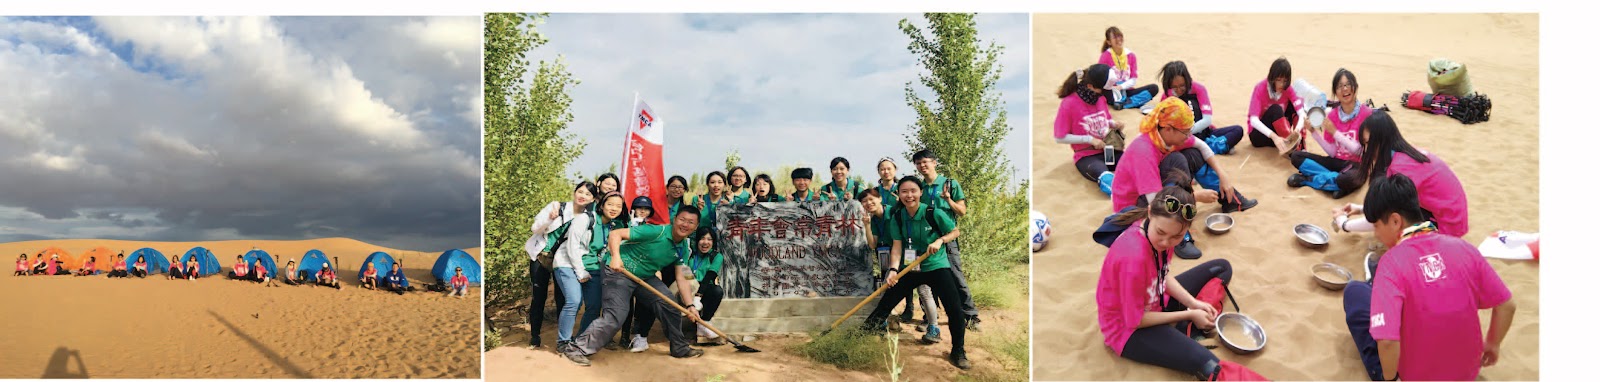 YMCA國際海外志工  寧夏  種樹  樹木  服務學習